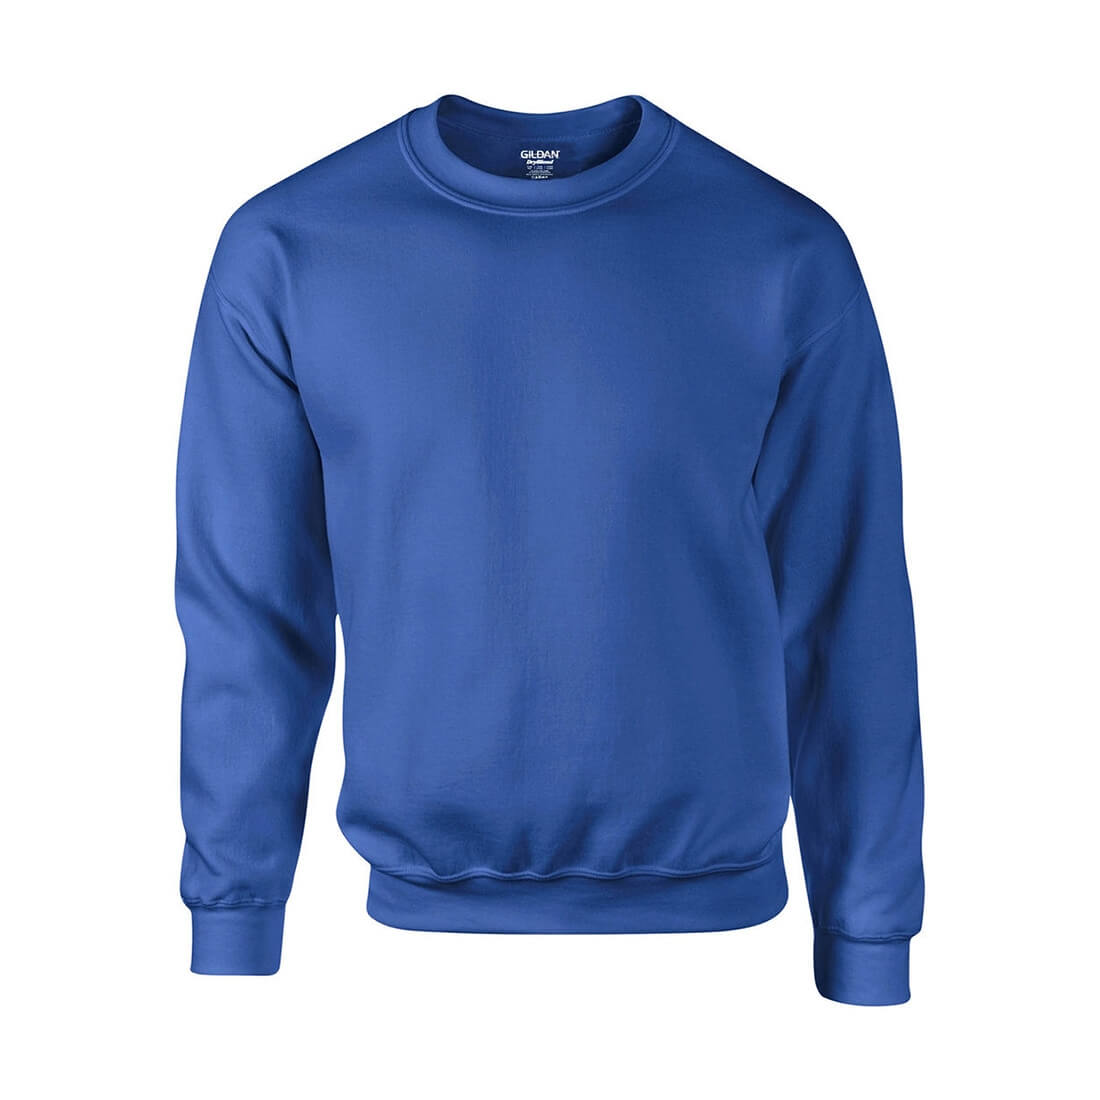 Set-In Sweatshirt - Les vêtements de protection